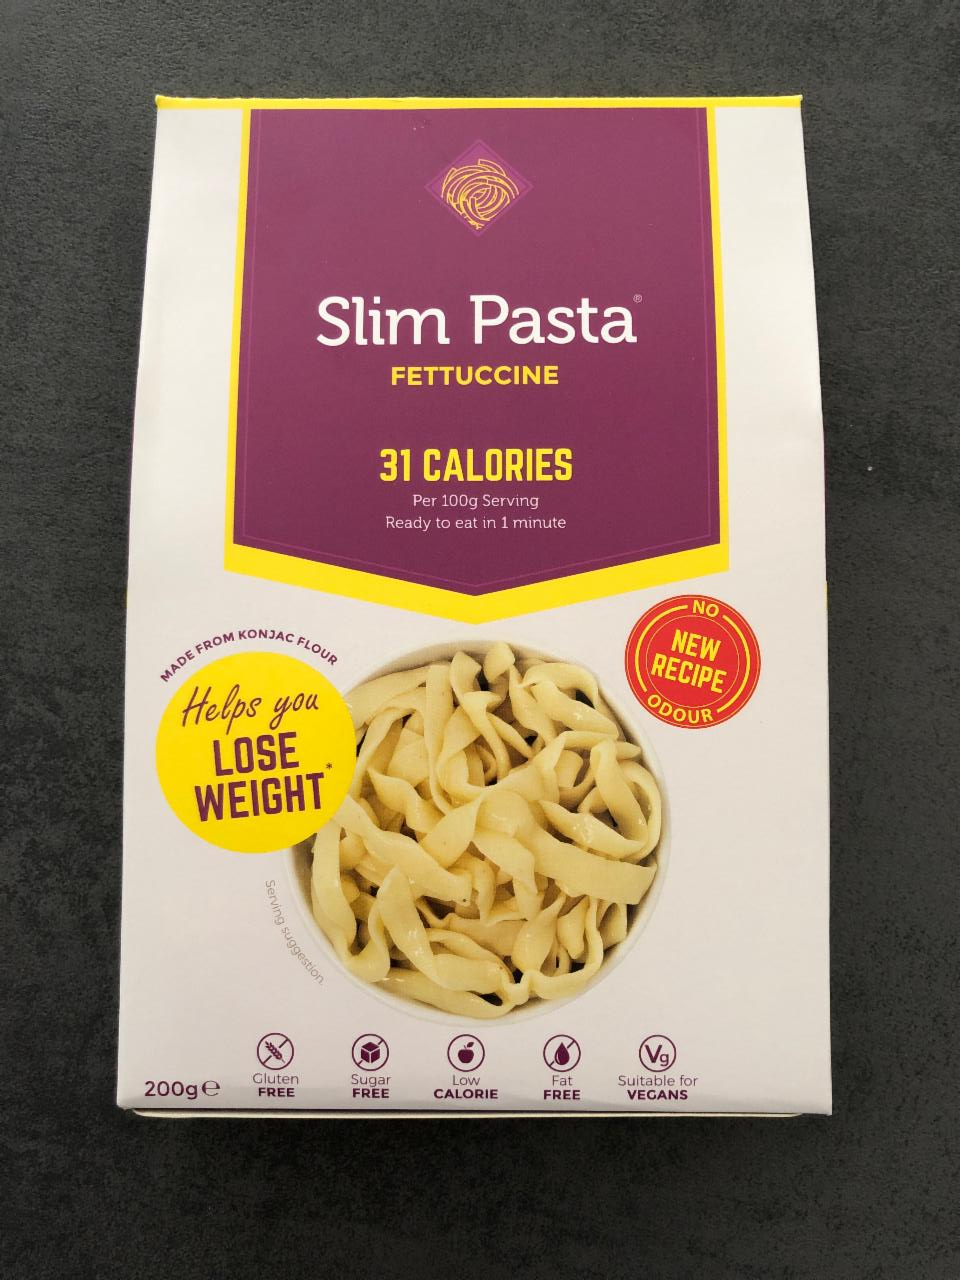 Fotografie - Slim Pasta Fettuccine 31 Calories